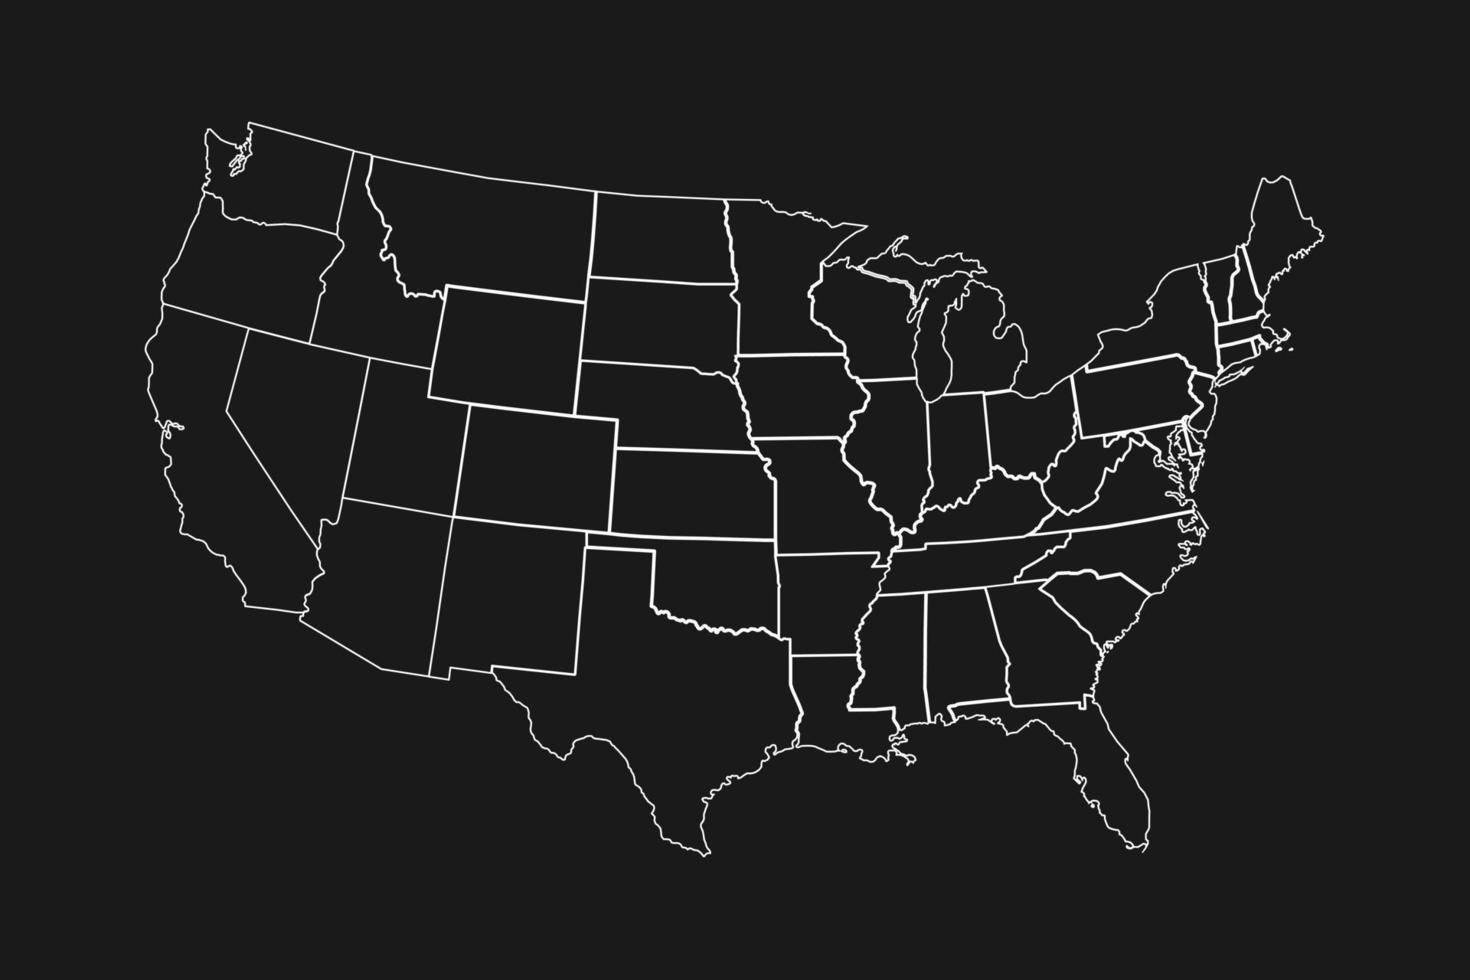 hög detaljerad karta över usa med stater gränser på svart bakgrund vektor